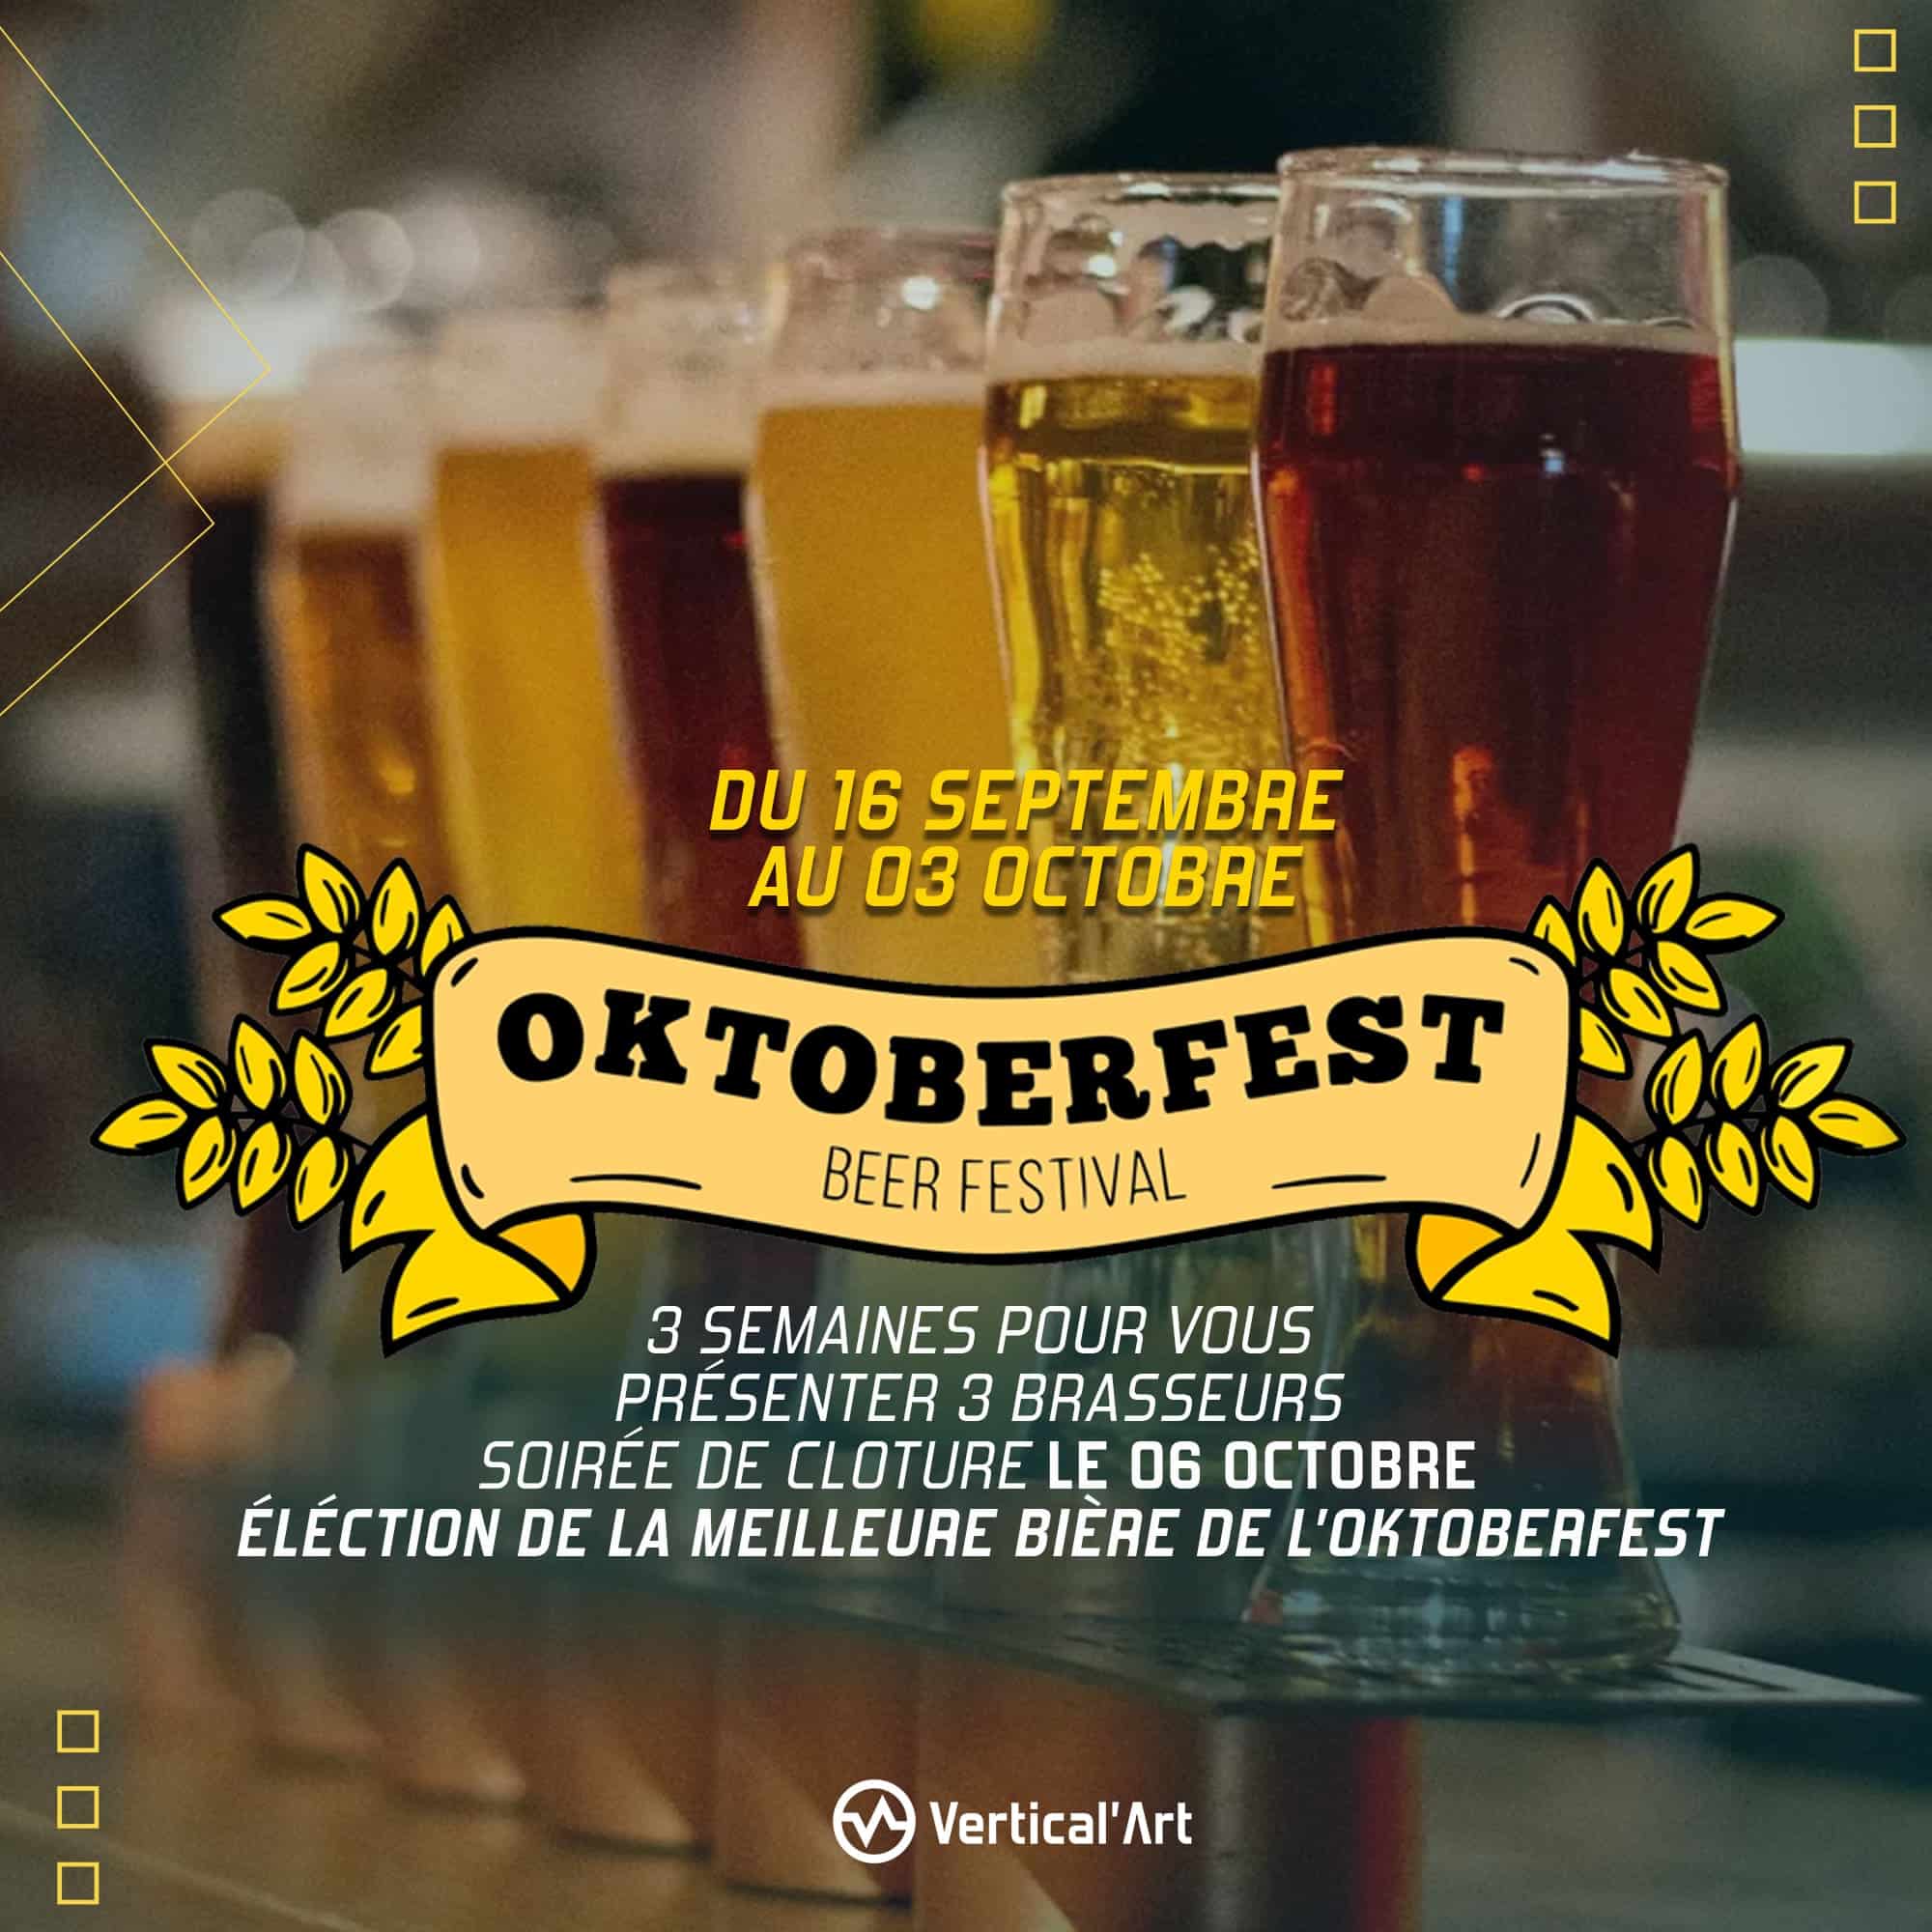 OktoberFest à Vertical'Art Lille du 18 septembre au 03 octobre